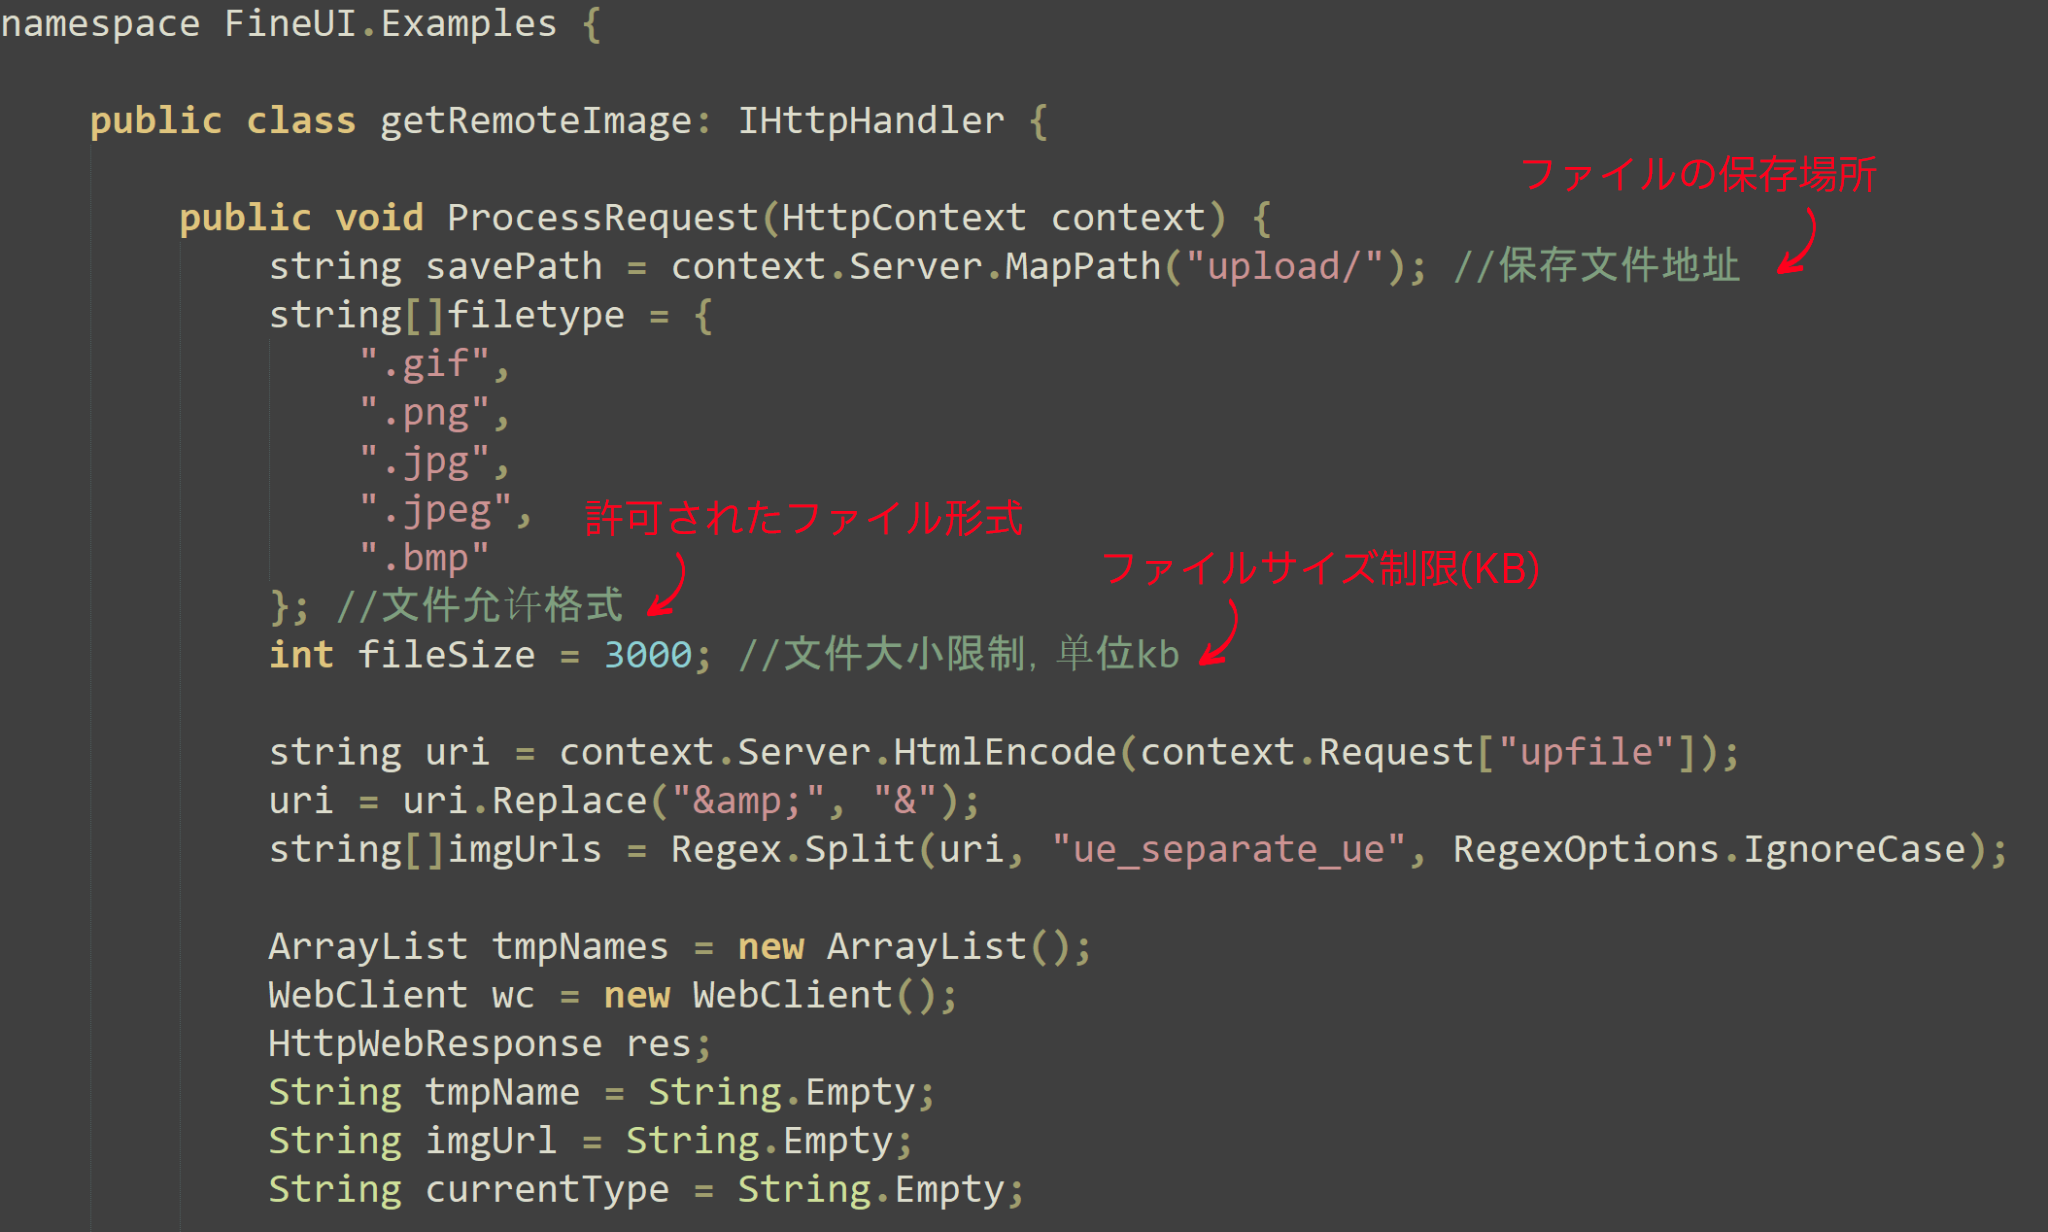 画像 16 は、多数の行からなるコードのスクリーンショットです。3 行のコメントが漢字を含む部分を矢印で示しています。上から下へ: ファイルのアドレスを保存許可されたファイル フォーマットファイルサイズの制限 (KB) 